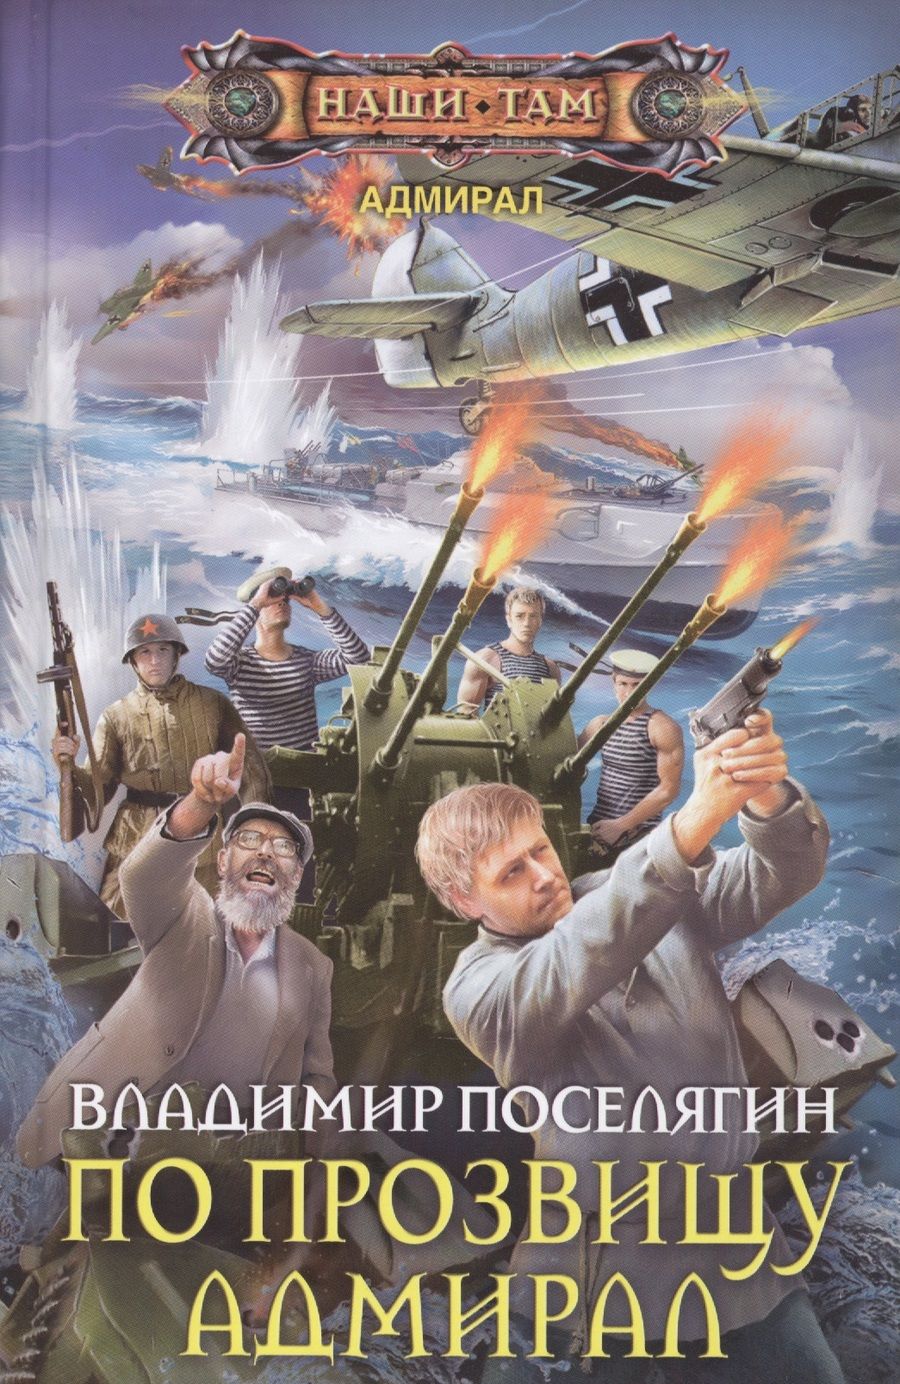 Обложка книги "Поселягин: По прозвищу Адмирал"